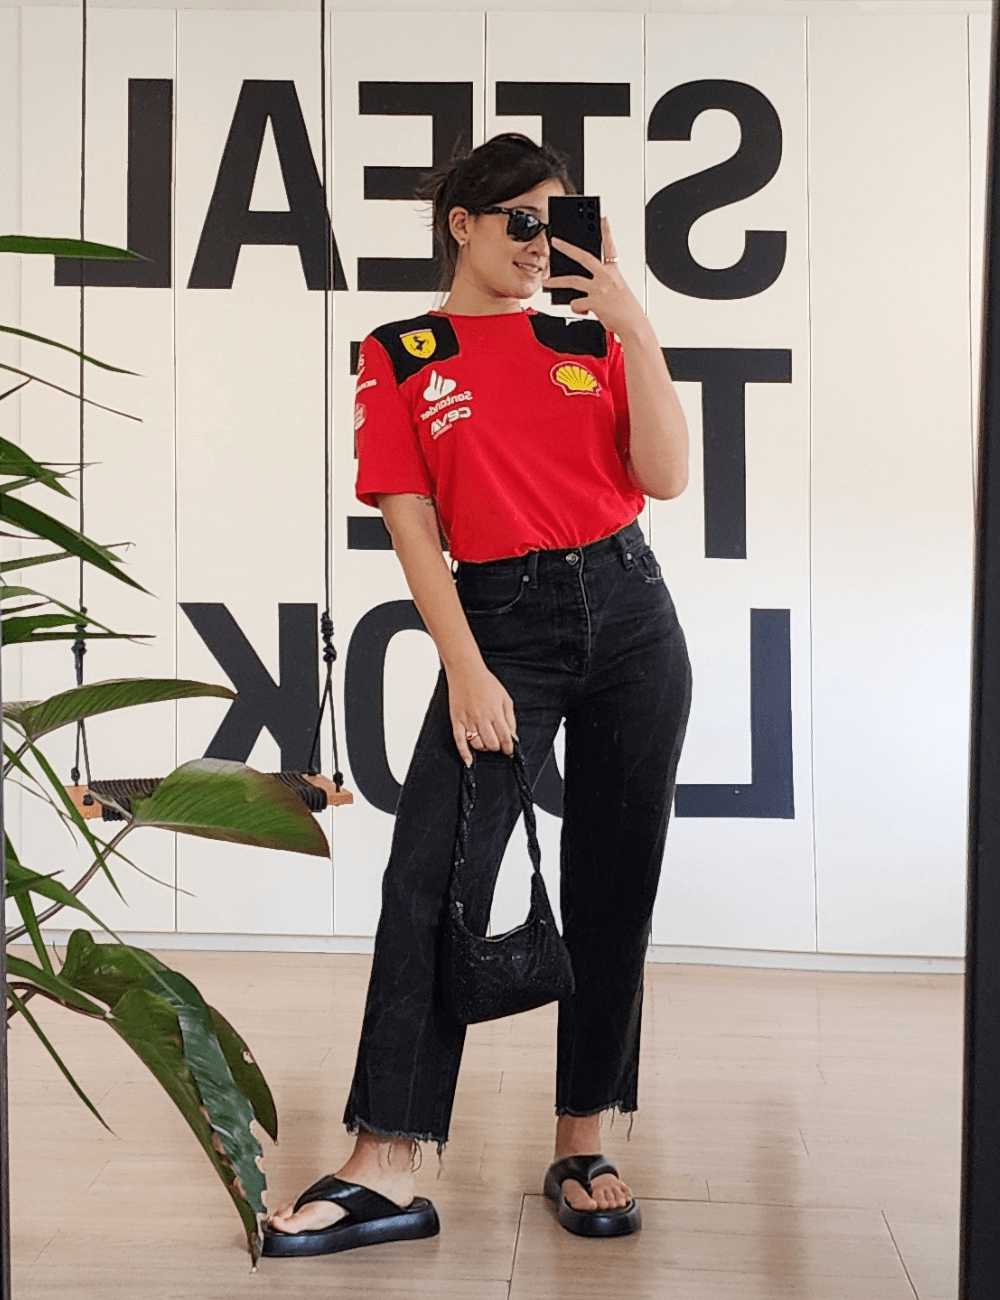 Izabela Suzuki - calça jeans preta, blusa vermelha da ferrari, óculos e bolsa preta - Fórmula 1 - verão - mulher asiática tirando foto no espelho - https://stealthelook.com.br